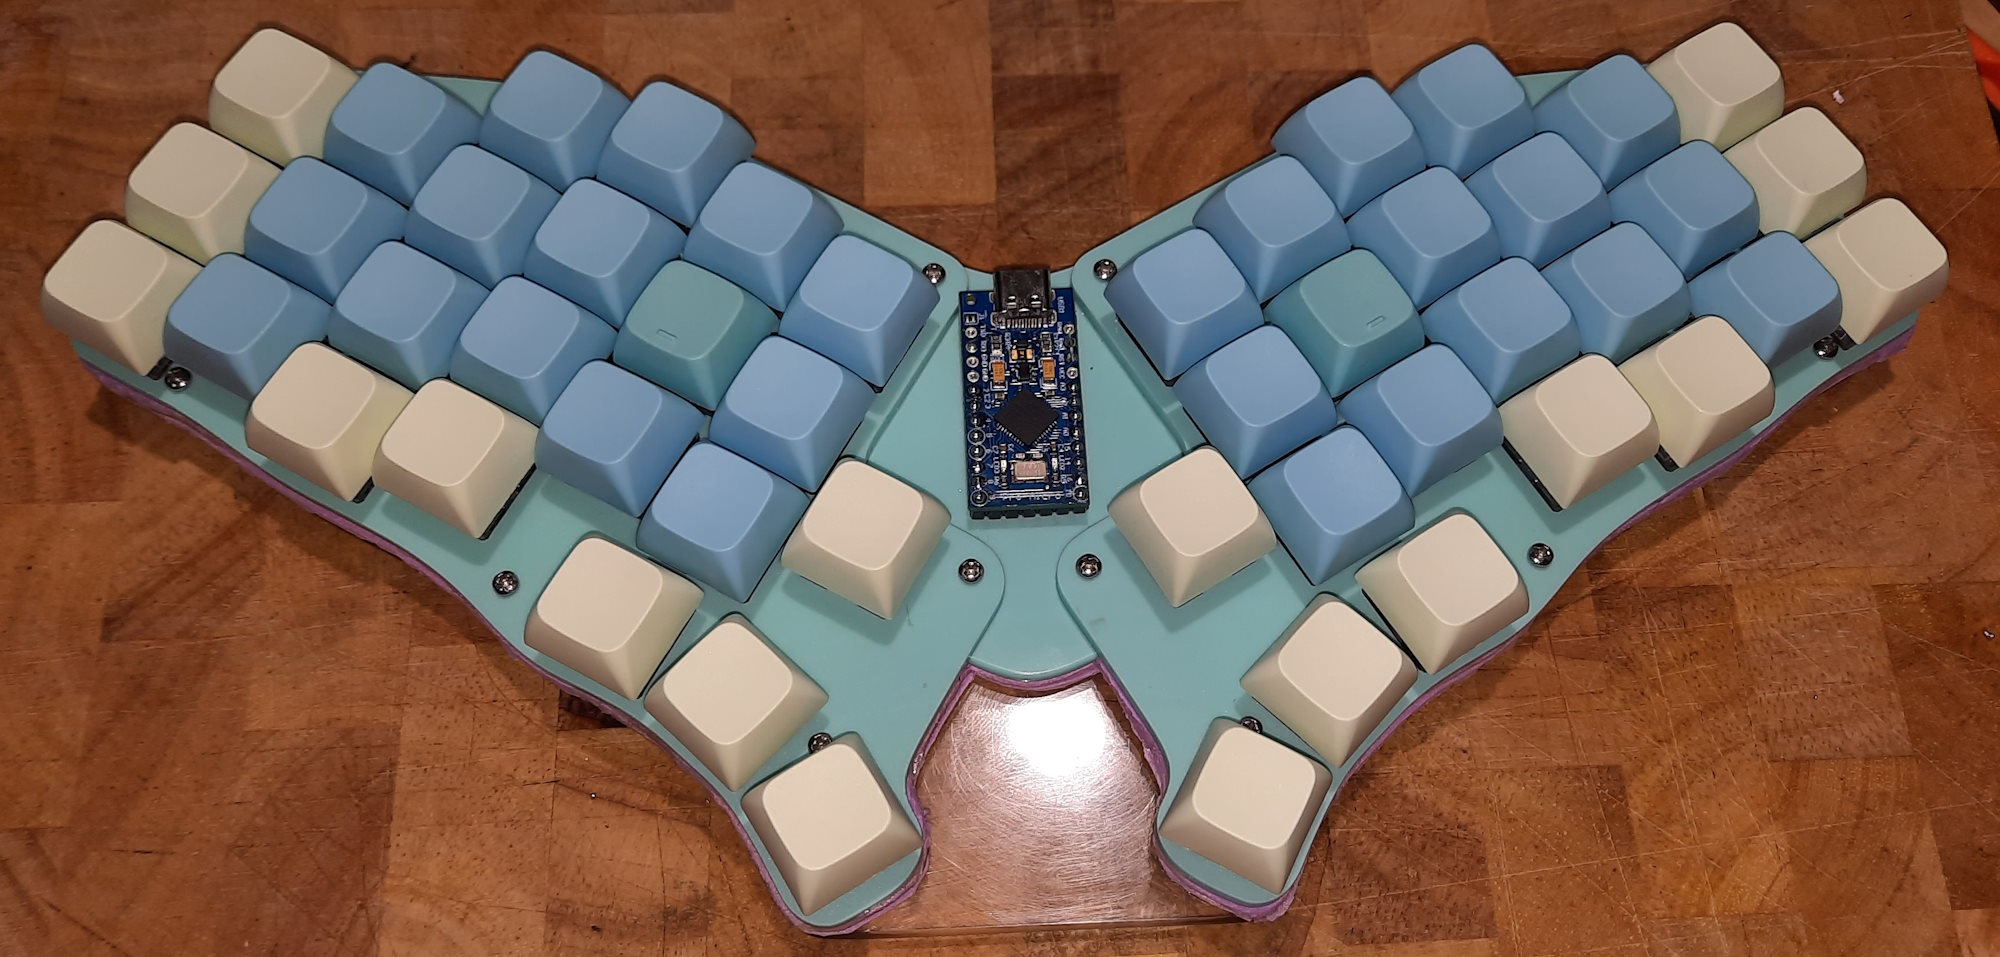 5t4n5-48 Keyboard